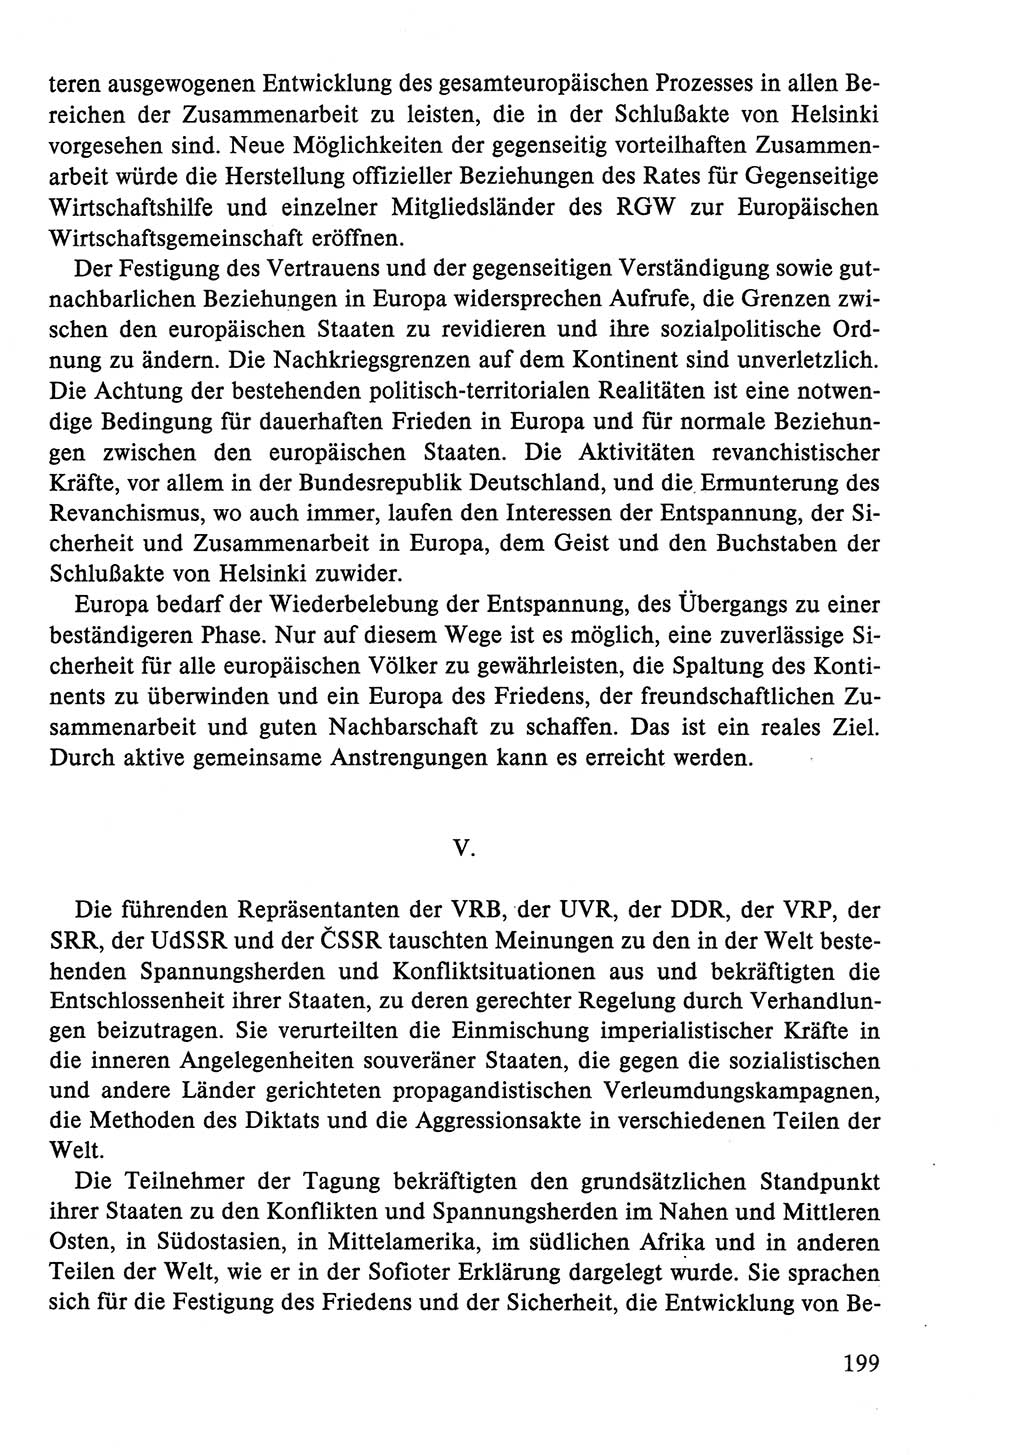 Dokumente der Sozialistischen Einheitspartei Deutschlands (SED) [Deutsche Demokratische Republik (DDR)] 1986-1987, Seite 199 (Dok. SED DDR 1986-1987, S. 199)